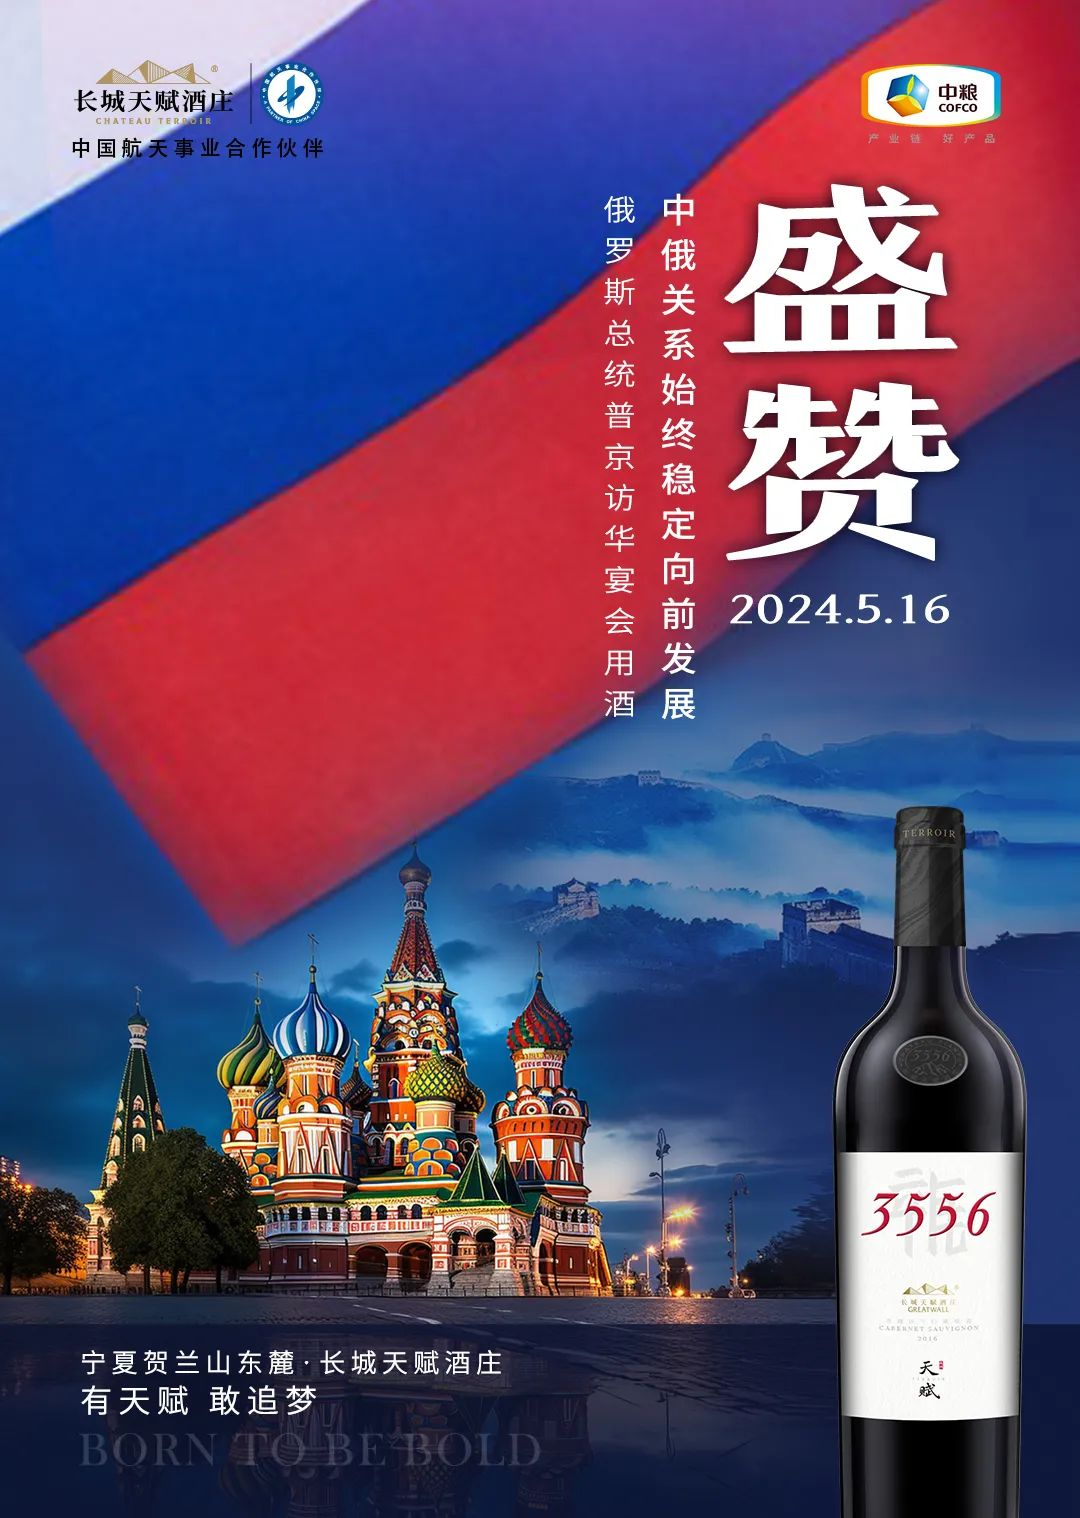  Great Wall natural wine was honored at Putin's visit to China banquet